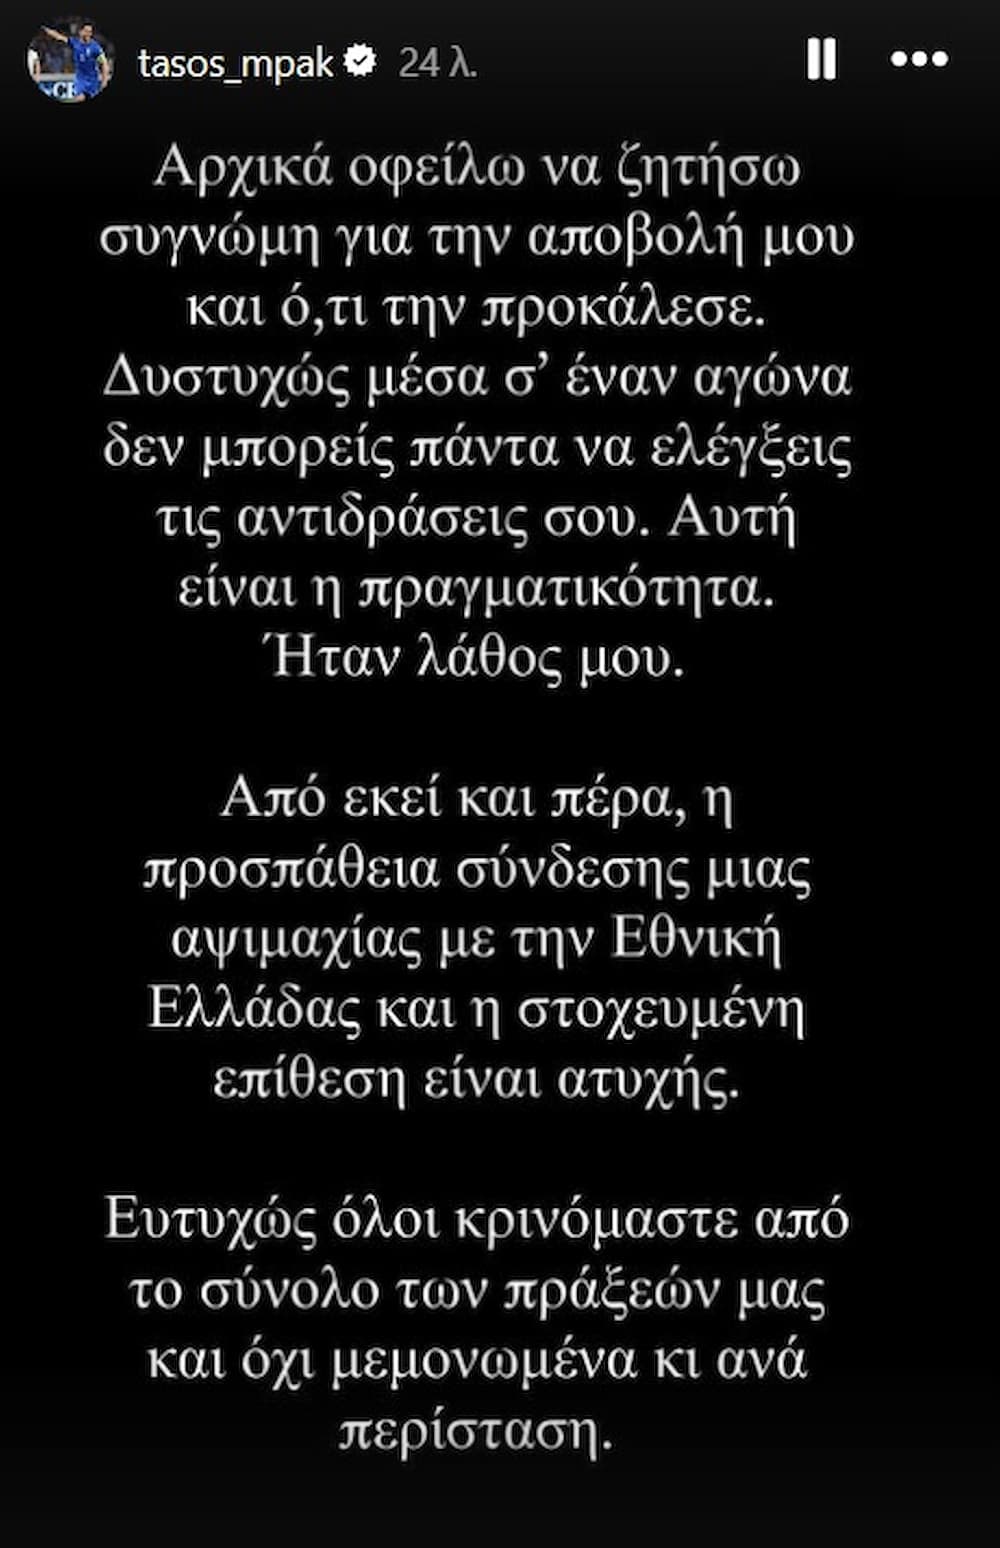 Μπακασέτας: «Συγγνώμη, ήταν λάθος μου - Ατυχής η προσπάθεια σύνδεσης μιας αψιμαχίας με την Εθνική Ελλάδας» (εικόνα)